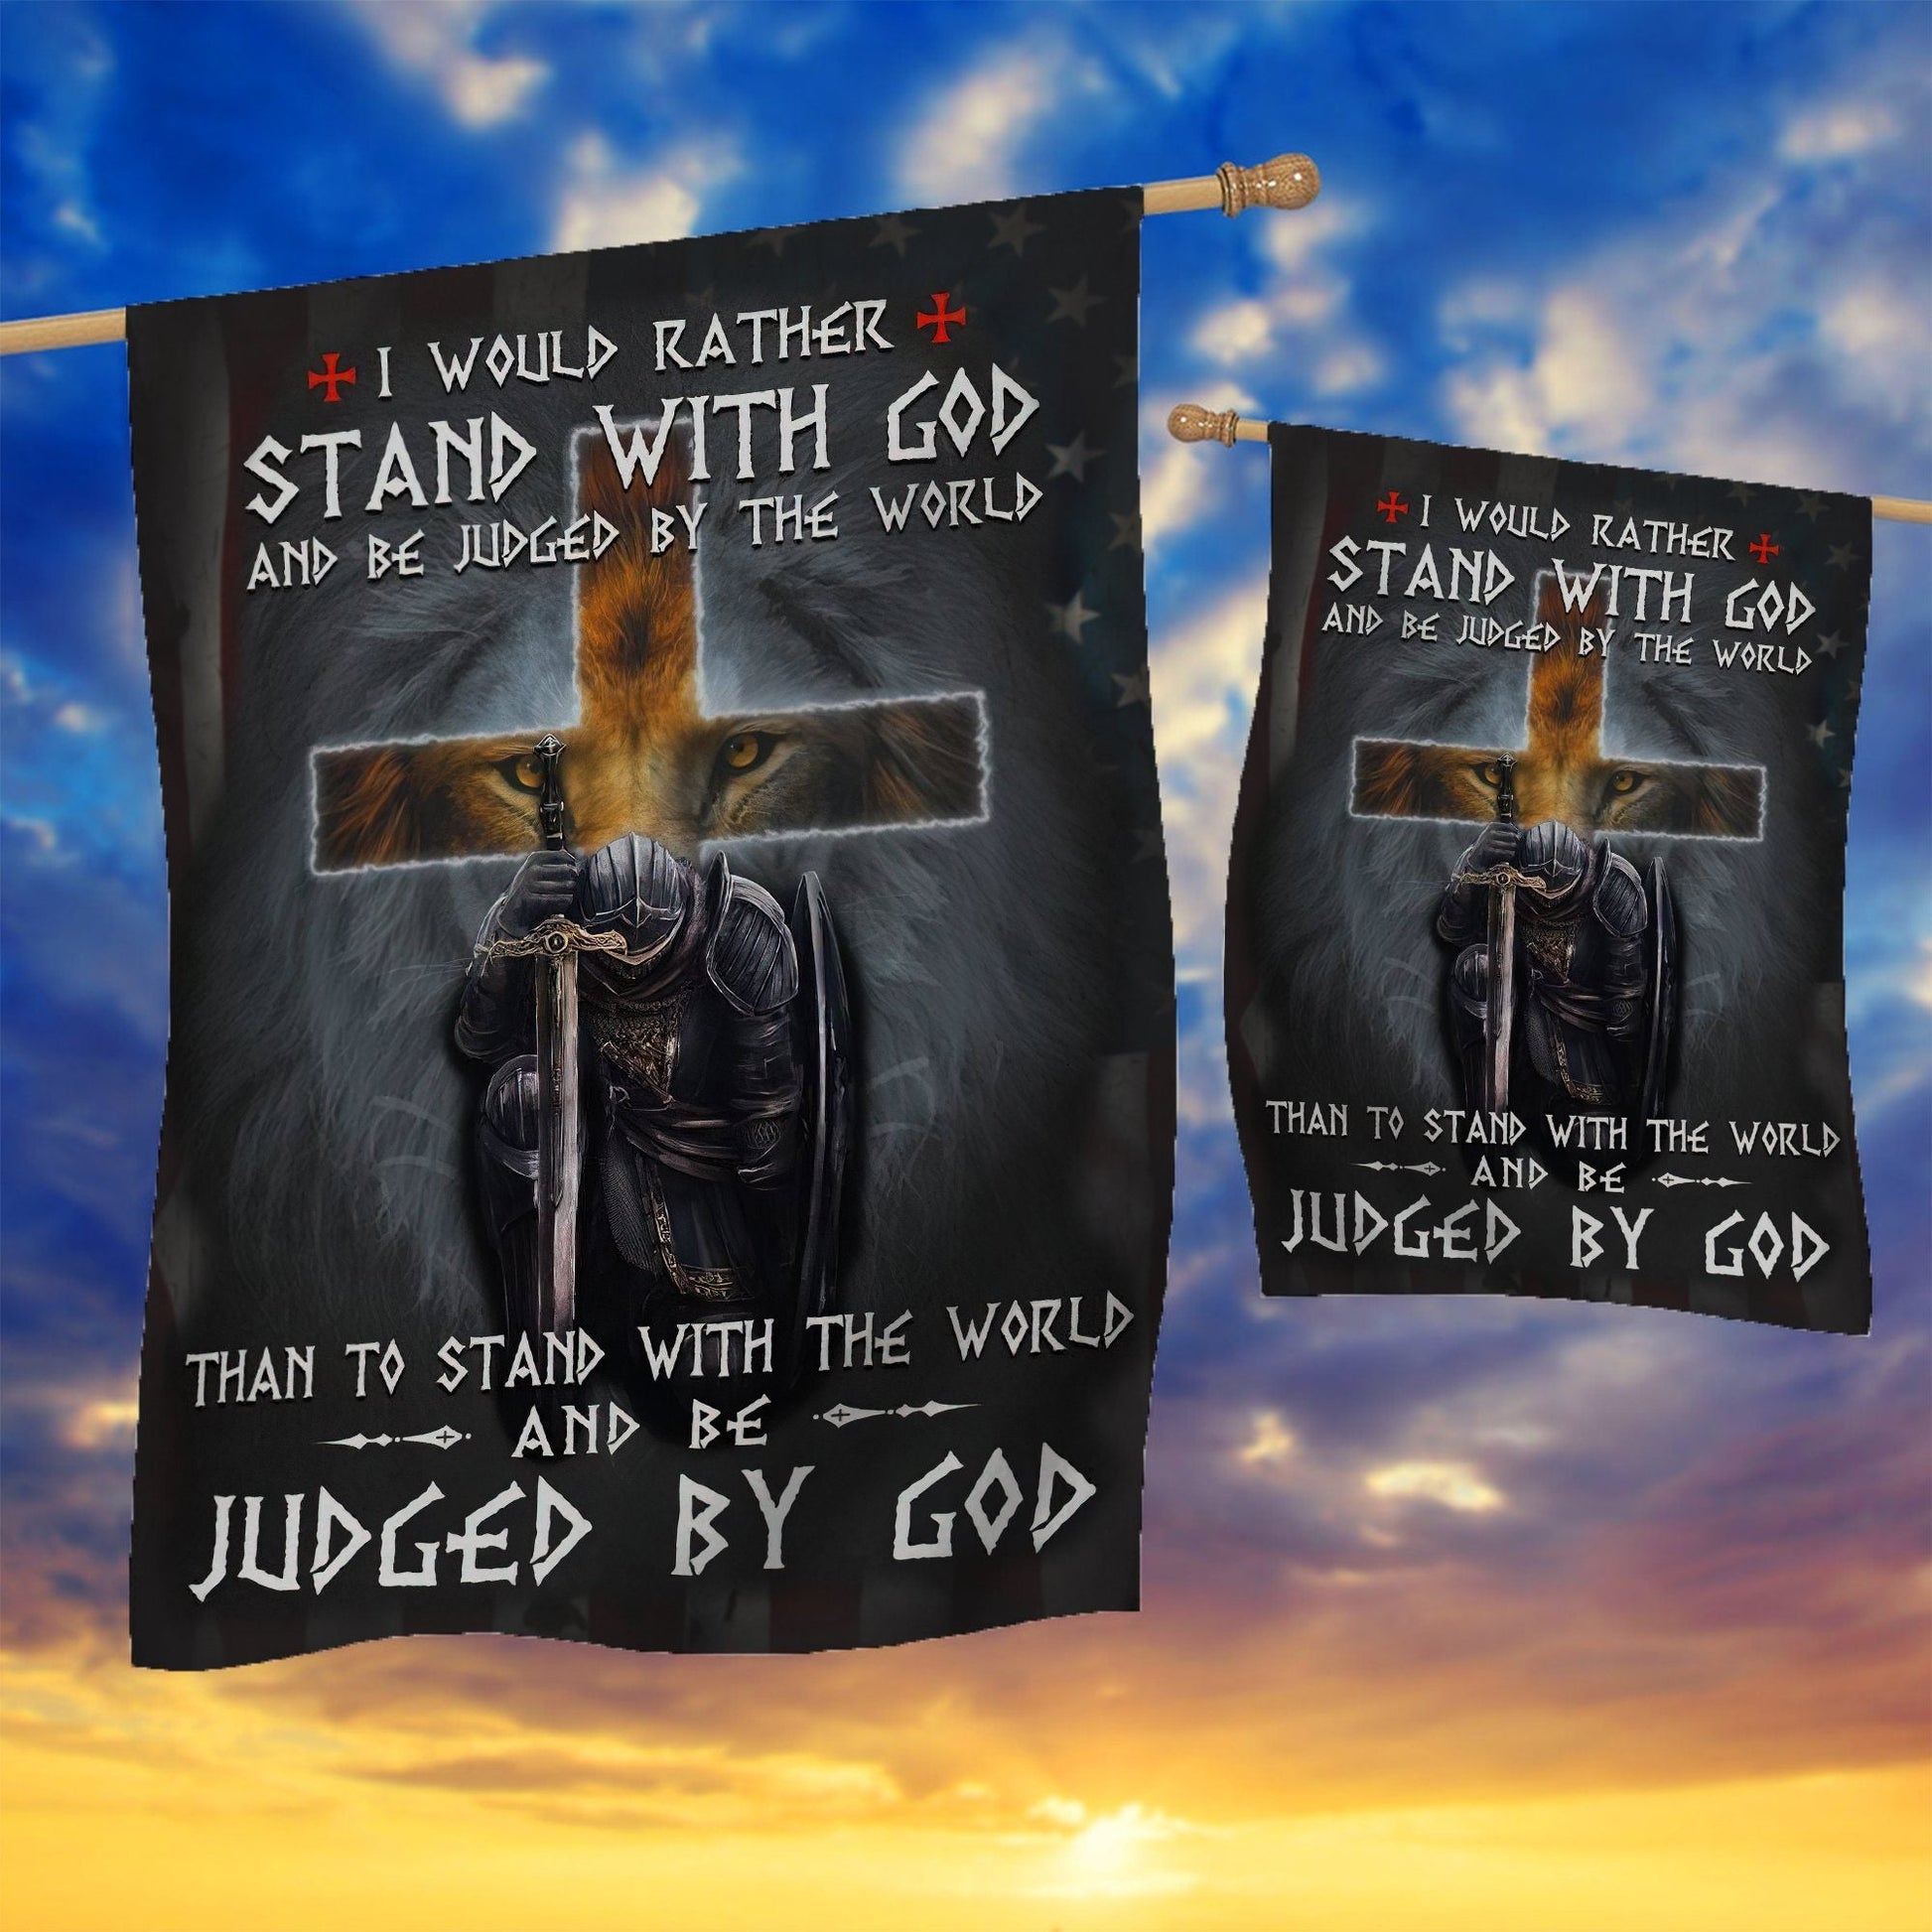 Gearhuman 3D Stand With God Judged By God Custom Flag GW2806215 House Flag 